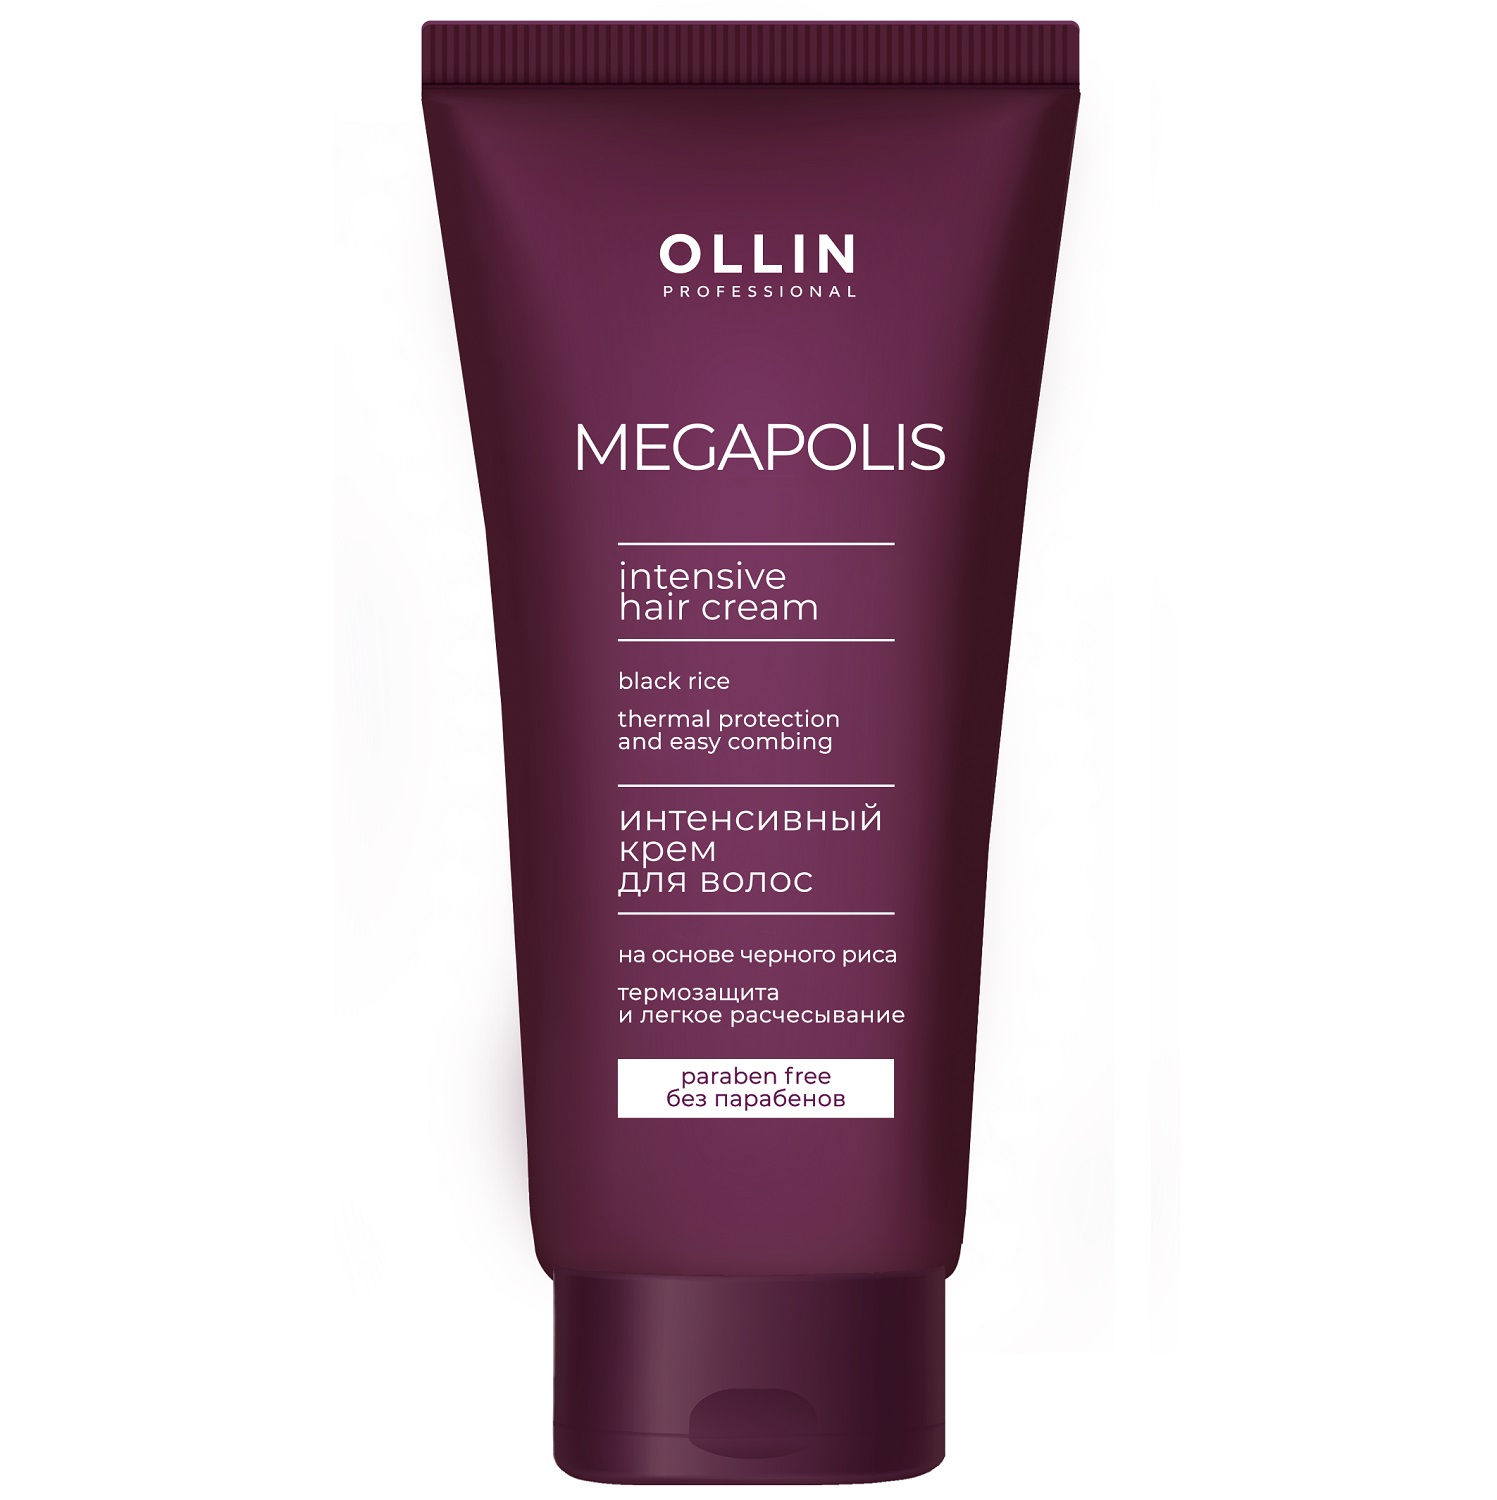 Ollin Professional Интенсивный крем с экстрактом черного риса для волос, 200 мл (Ollin Professional, Megapolis)